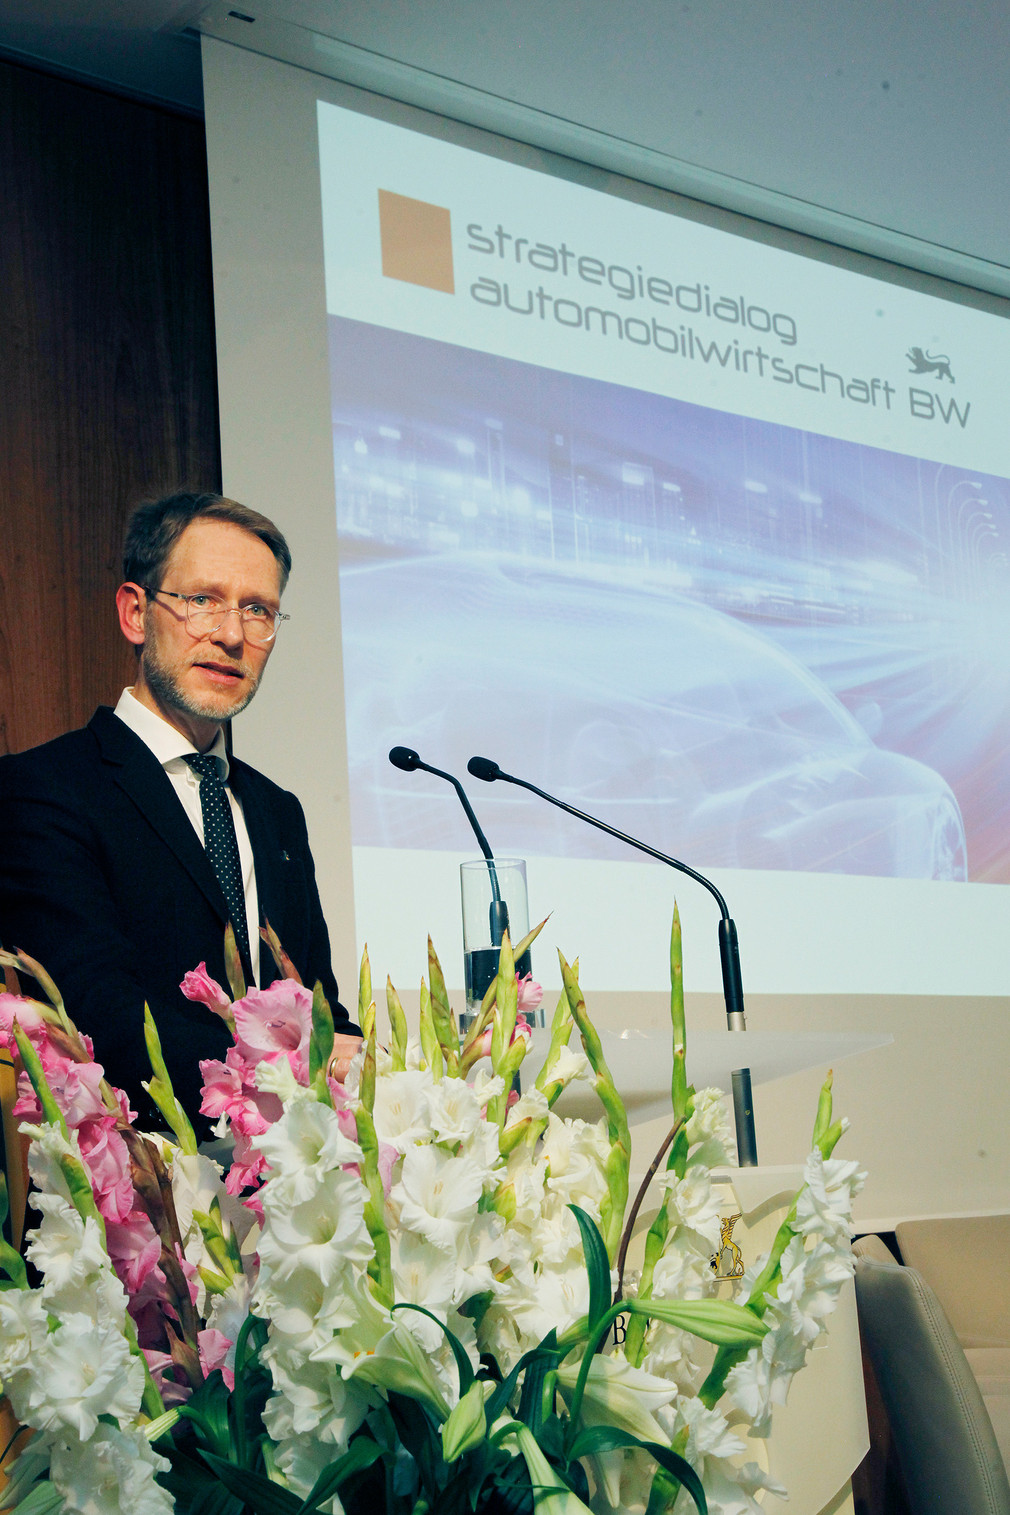 Eröffnung der öffentlichen Veranstaltung durch Staatssekretär Dr. Florian Stegmann (Bild: © Alexander Louvet)